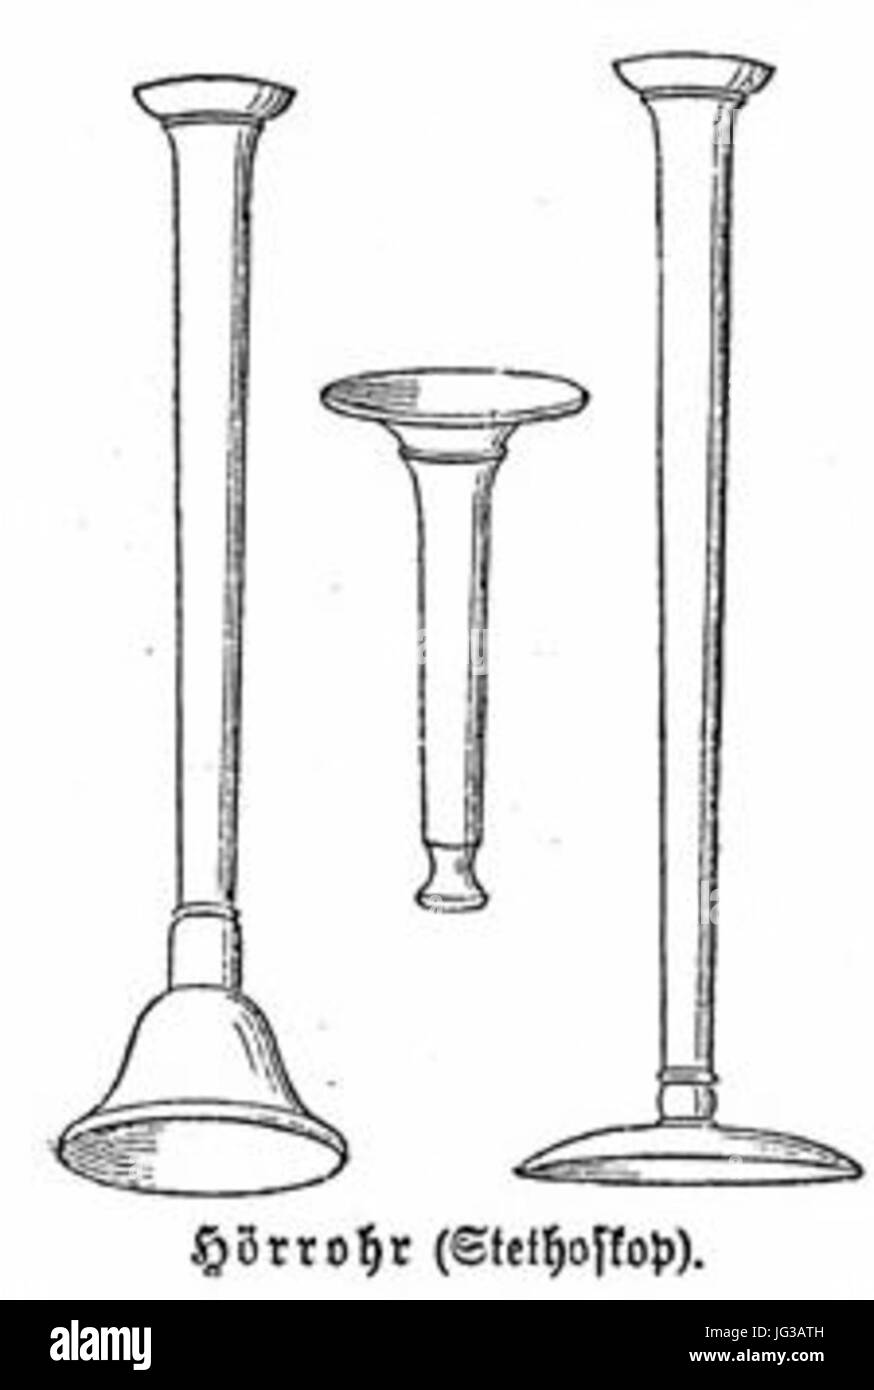 Hörrohr Stethoskop Meyers 1890 Stock Photo